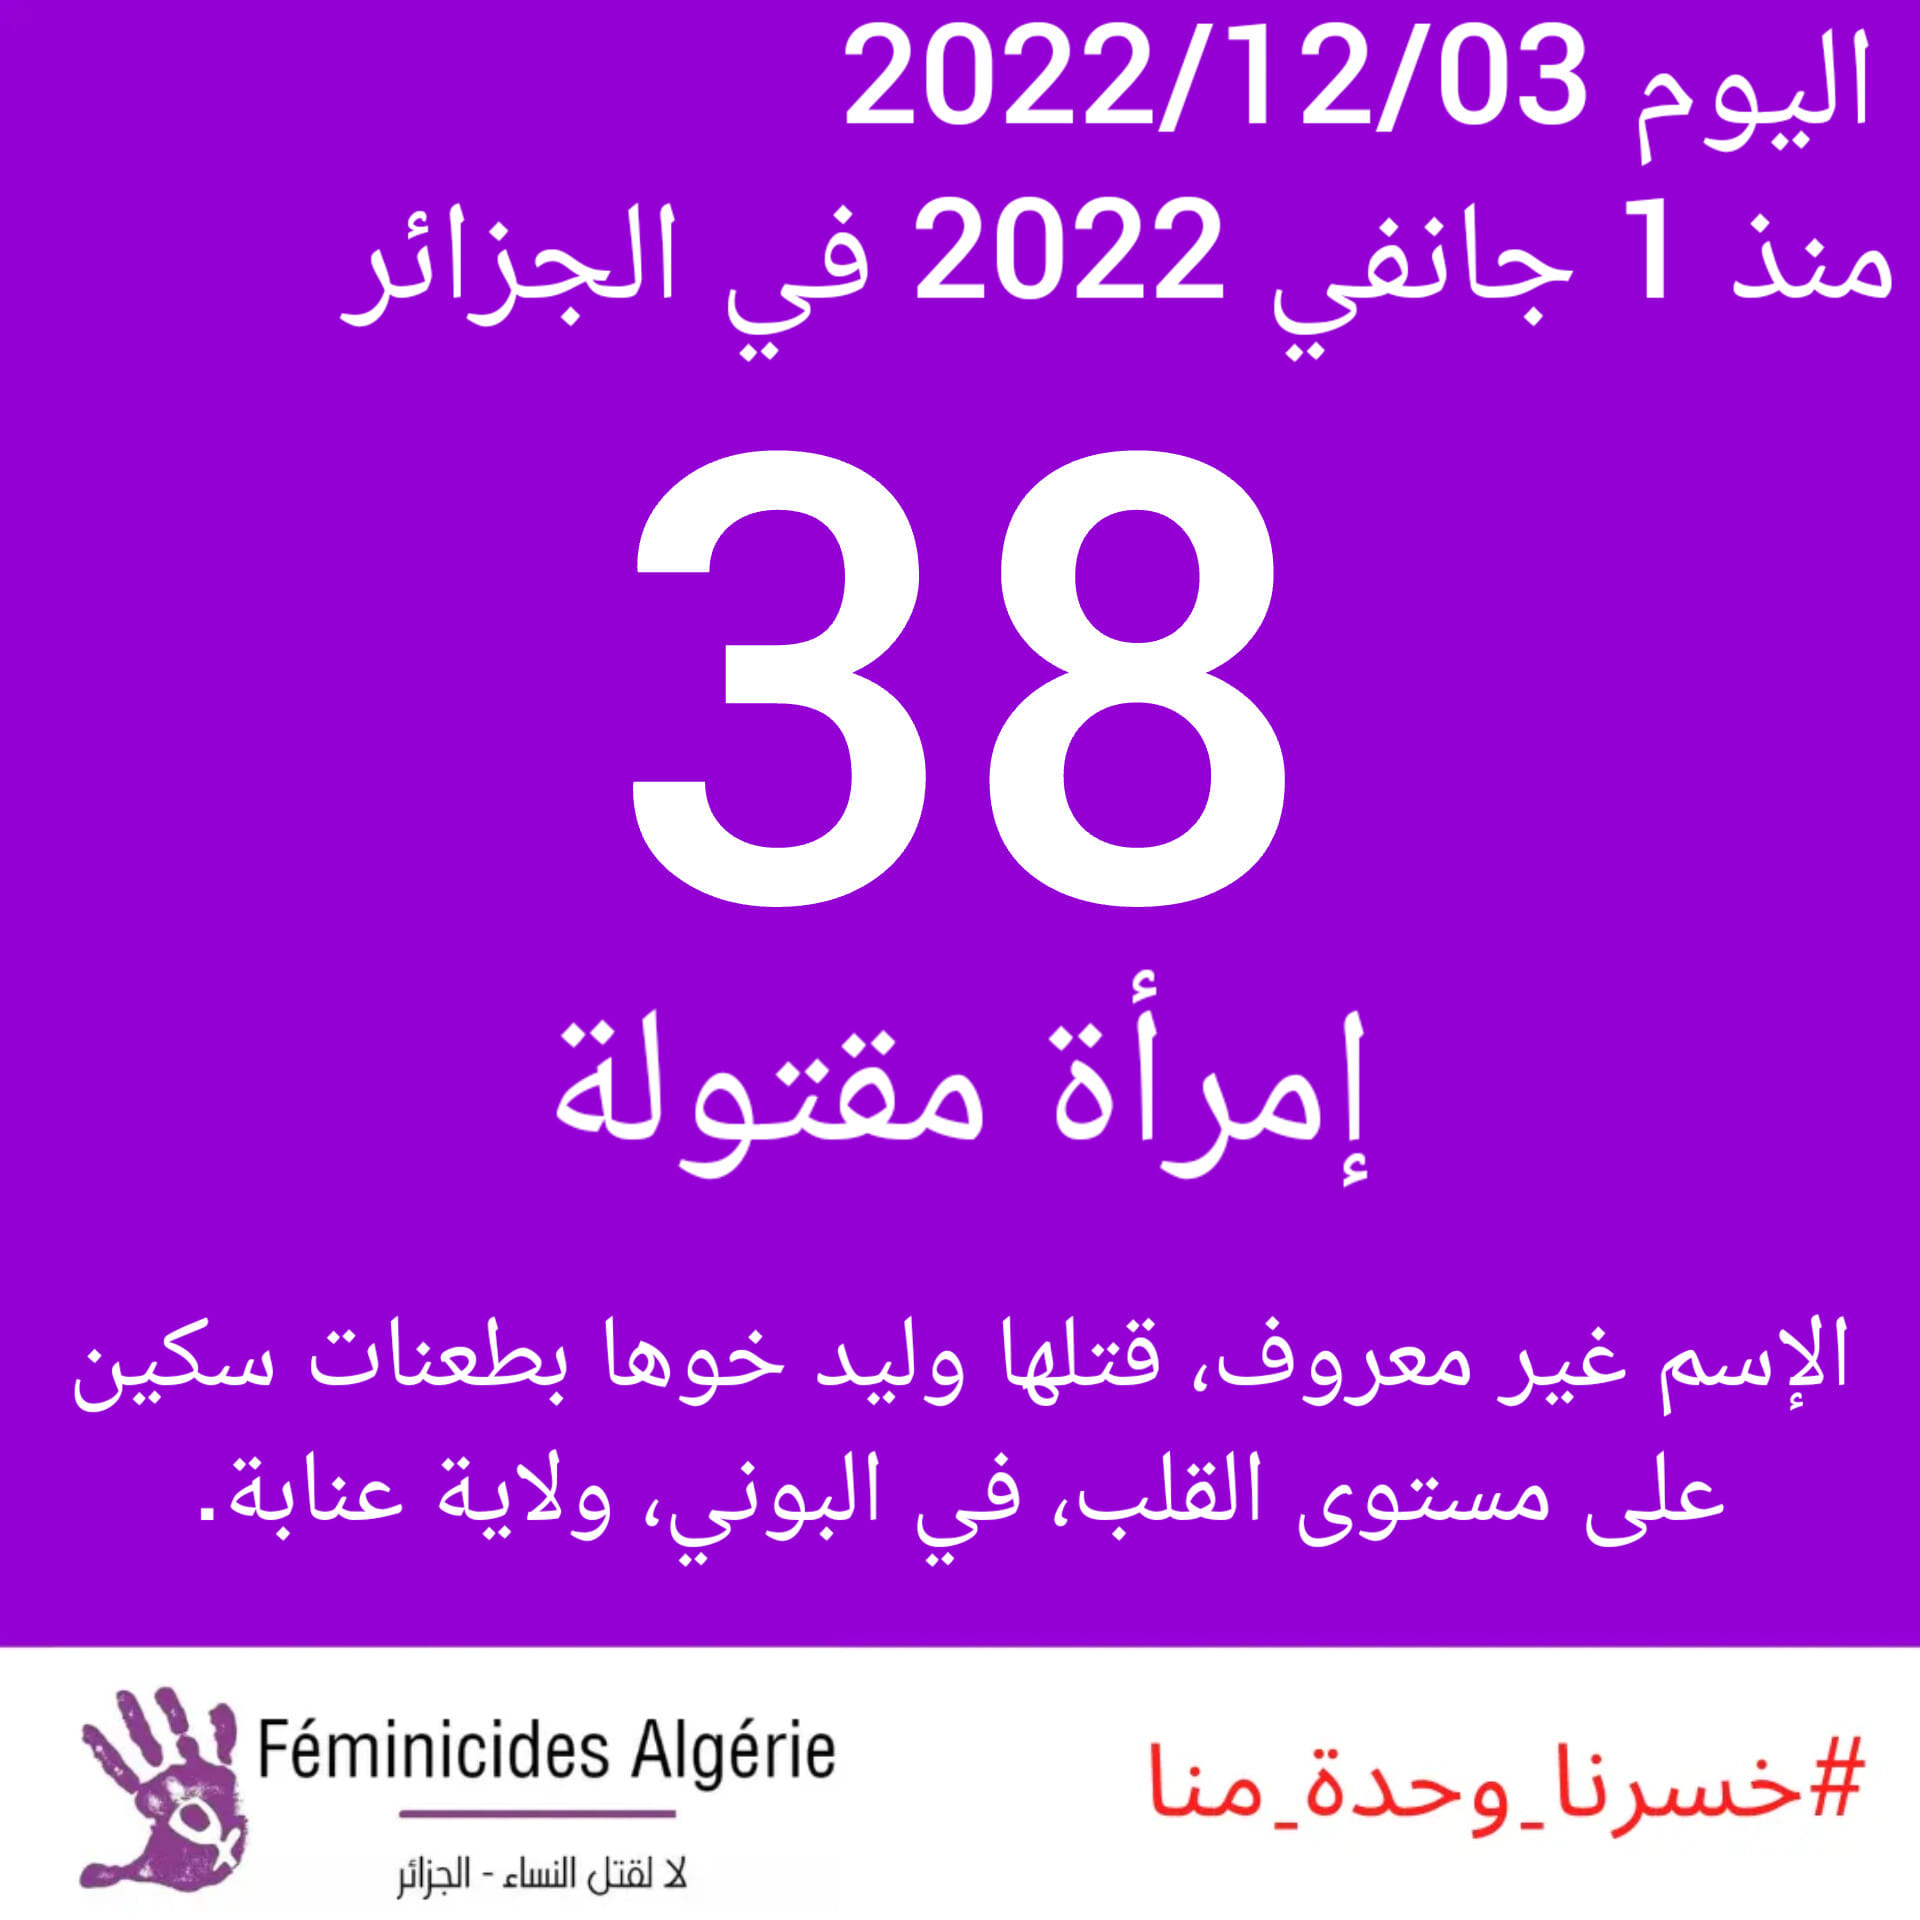 Féminicides Algérie